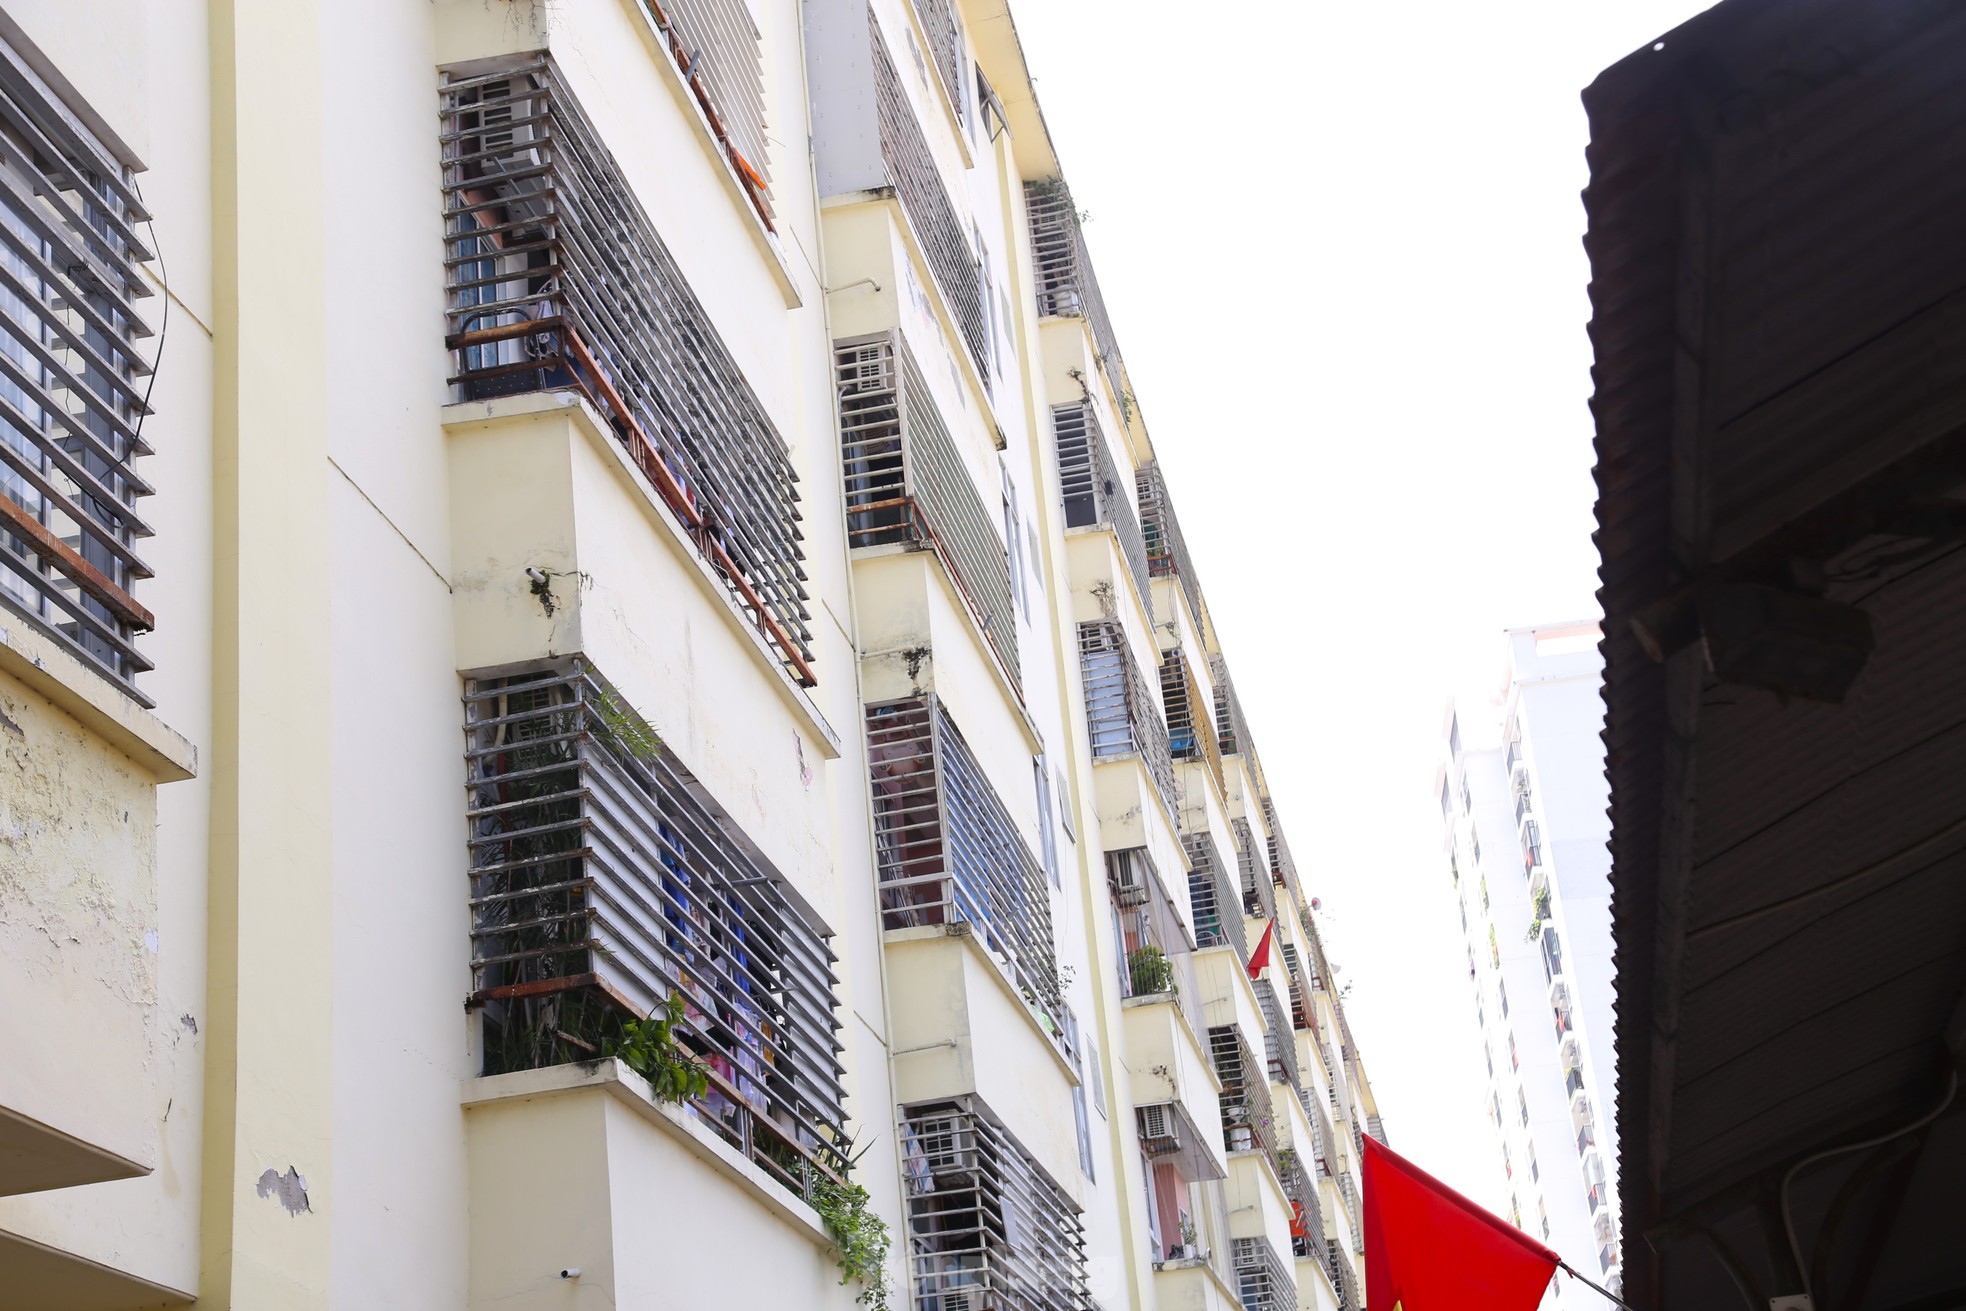 Nhiều chung cư ở Nghệ An bố trí điểm sạc xe điện riêng, có nơi cấm sạc qua đêm - Ảnh 4.